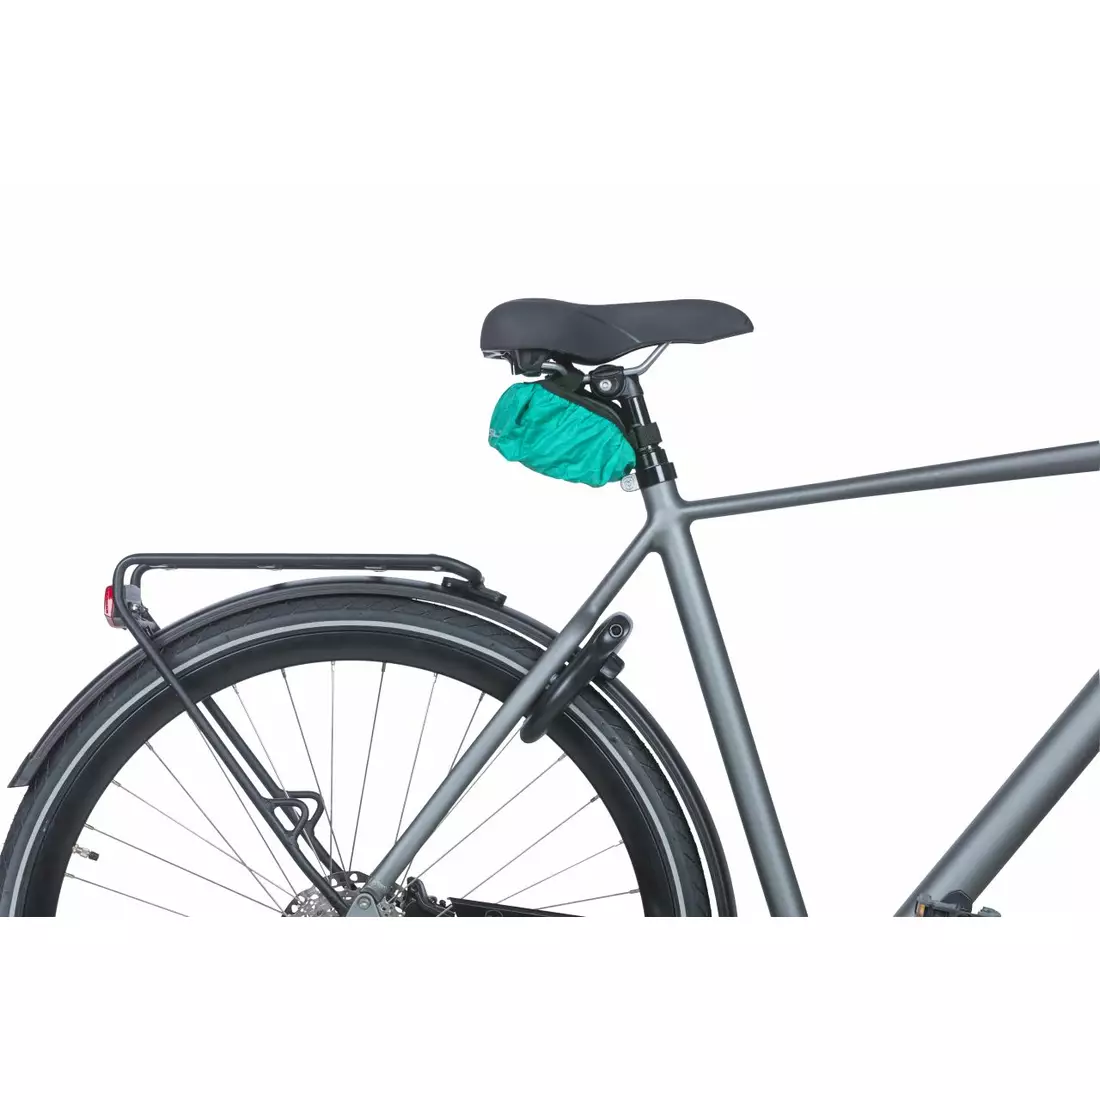 BASIL DISCOVERY 365D SADDLE BAG S geantă de șa pentru bicicletă 0,5 L, black melee